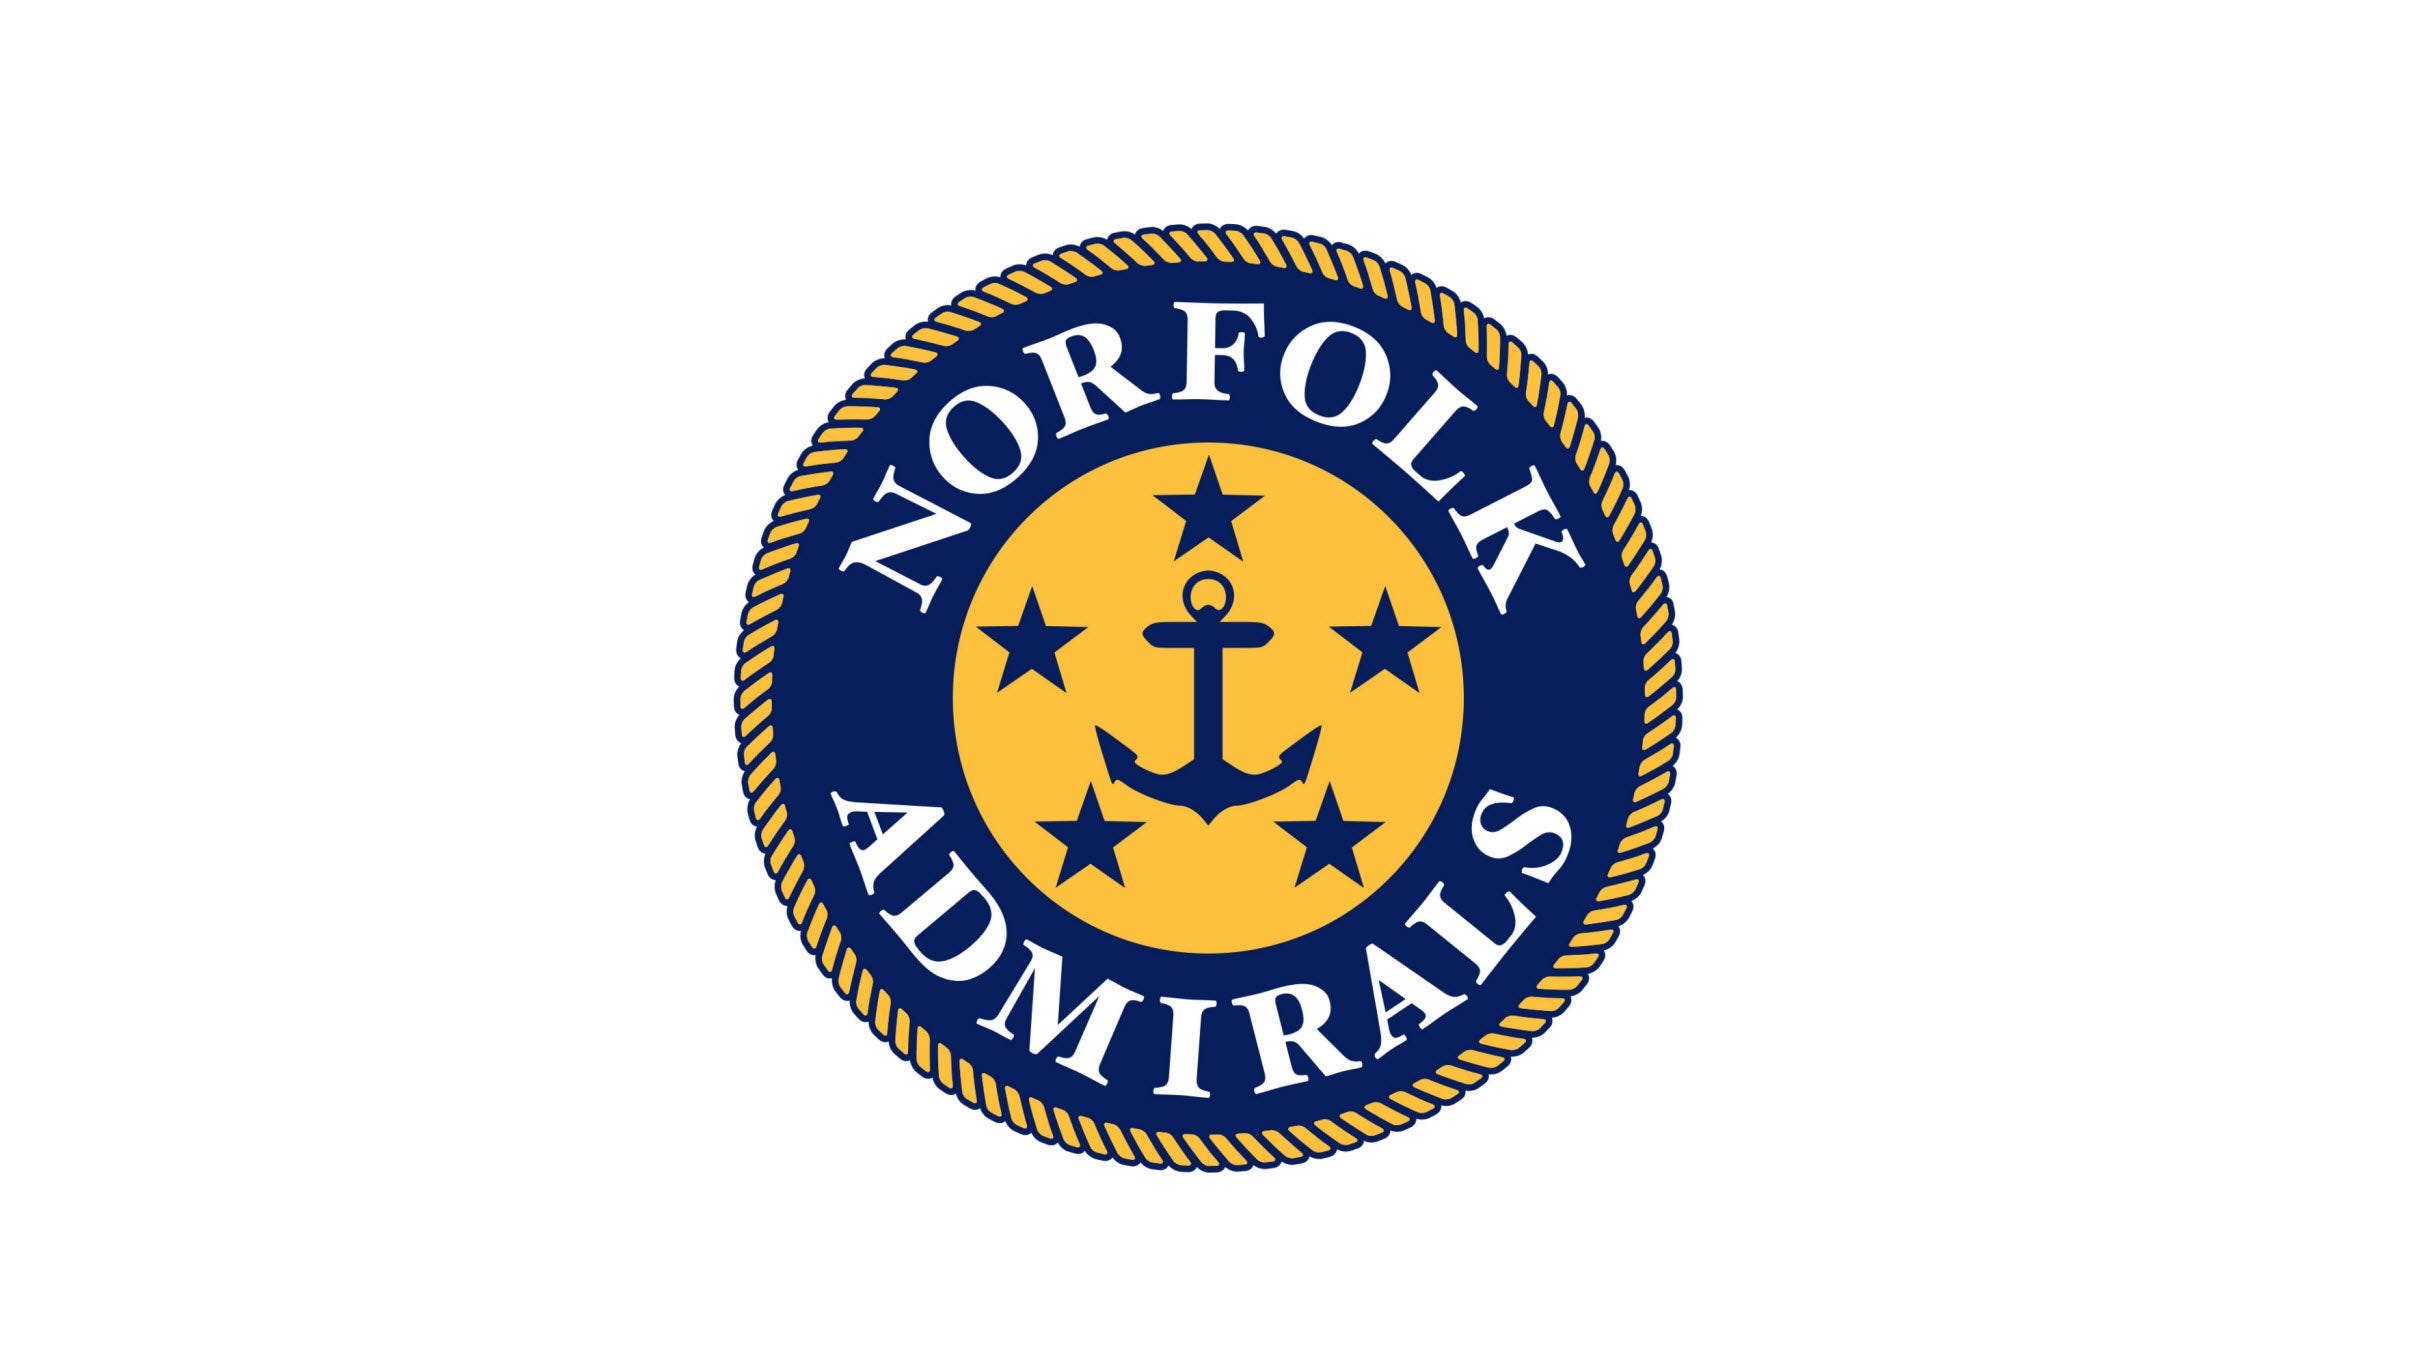 Norfolk Admirals Playoffs Round 2, Game 3 at Scope Arena